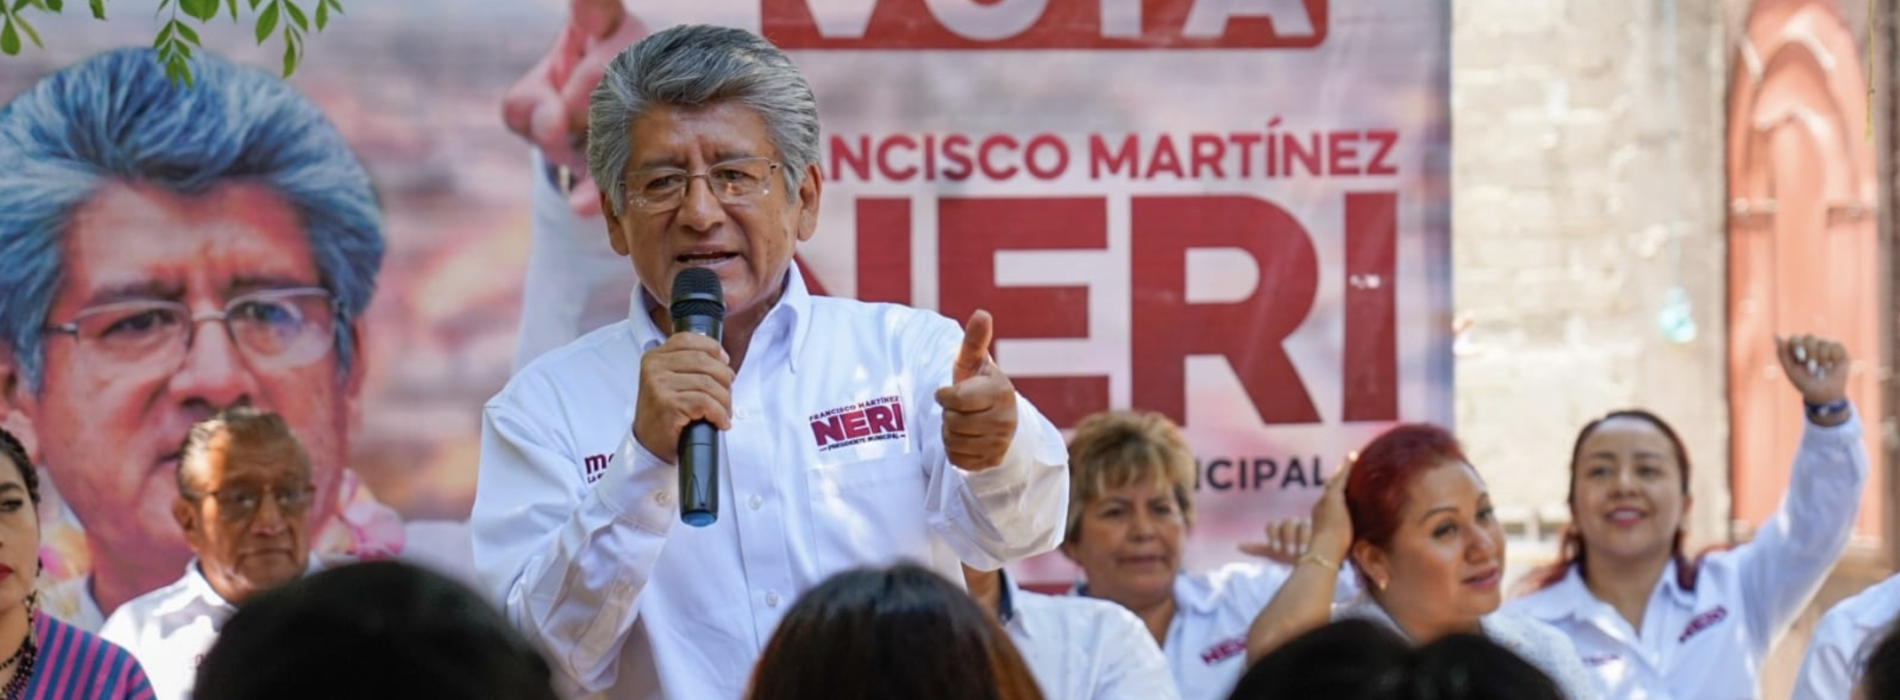 Propone Francisco Martínez Neri Modernización Integral de Servicios Públicos en Oaxaca.